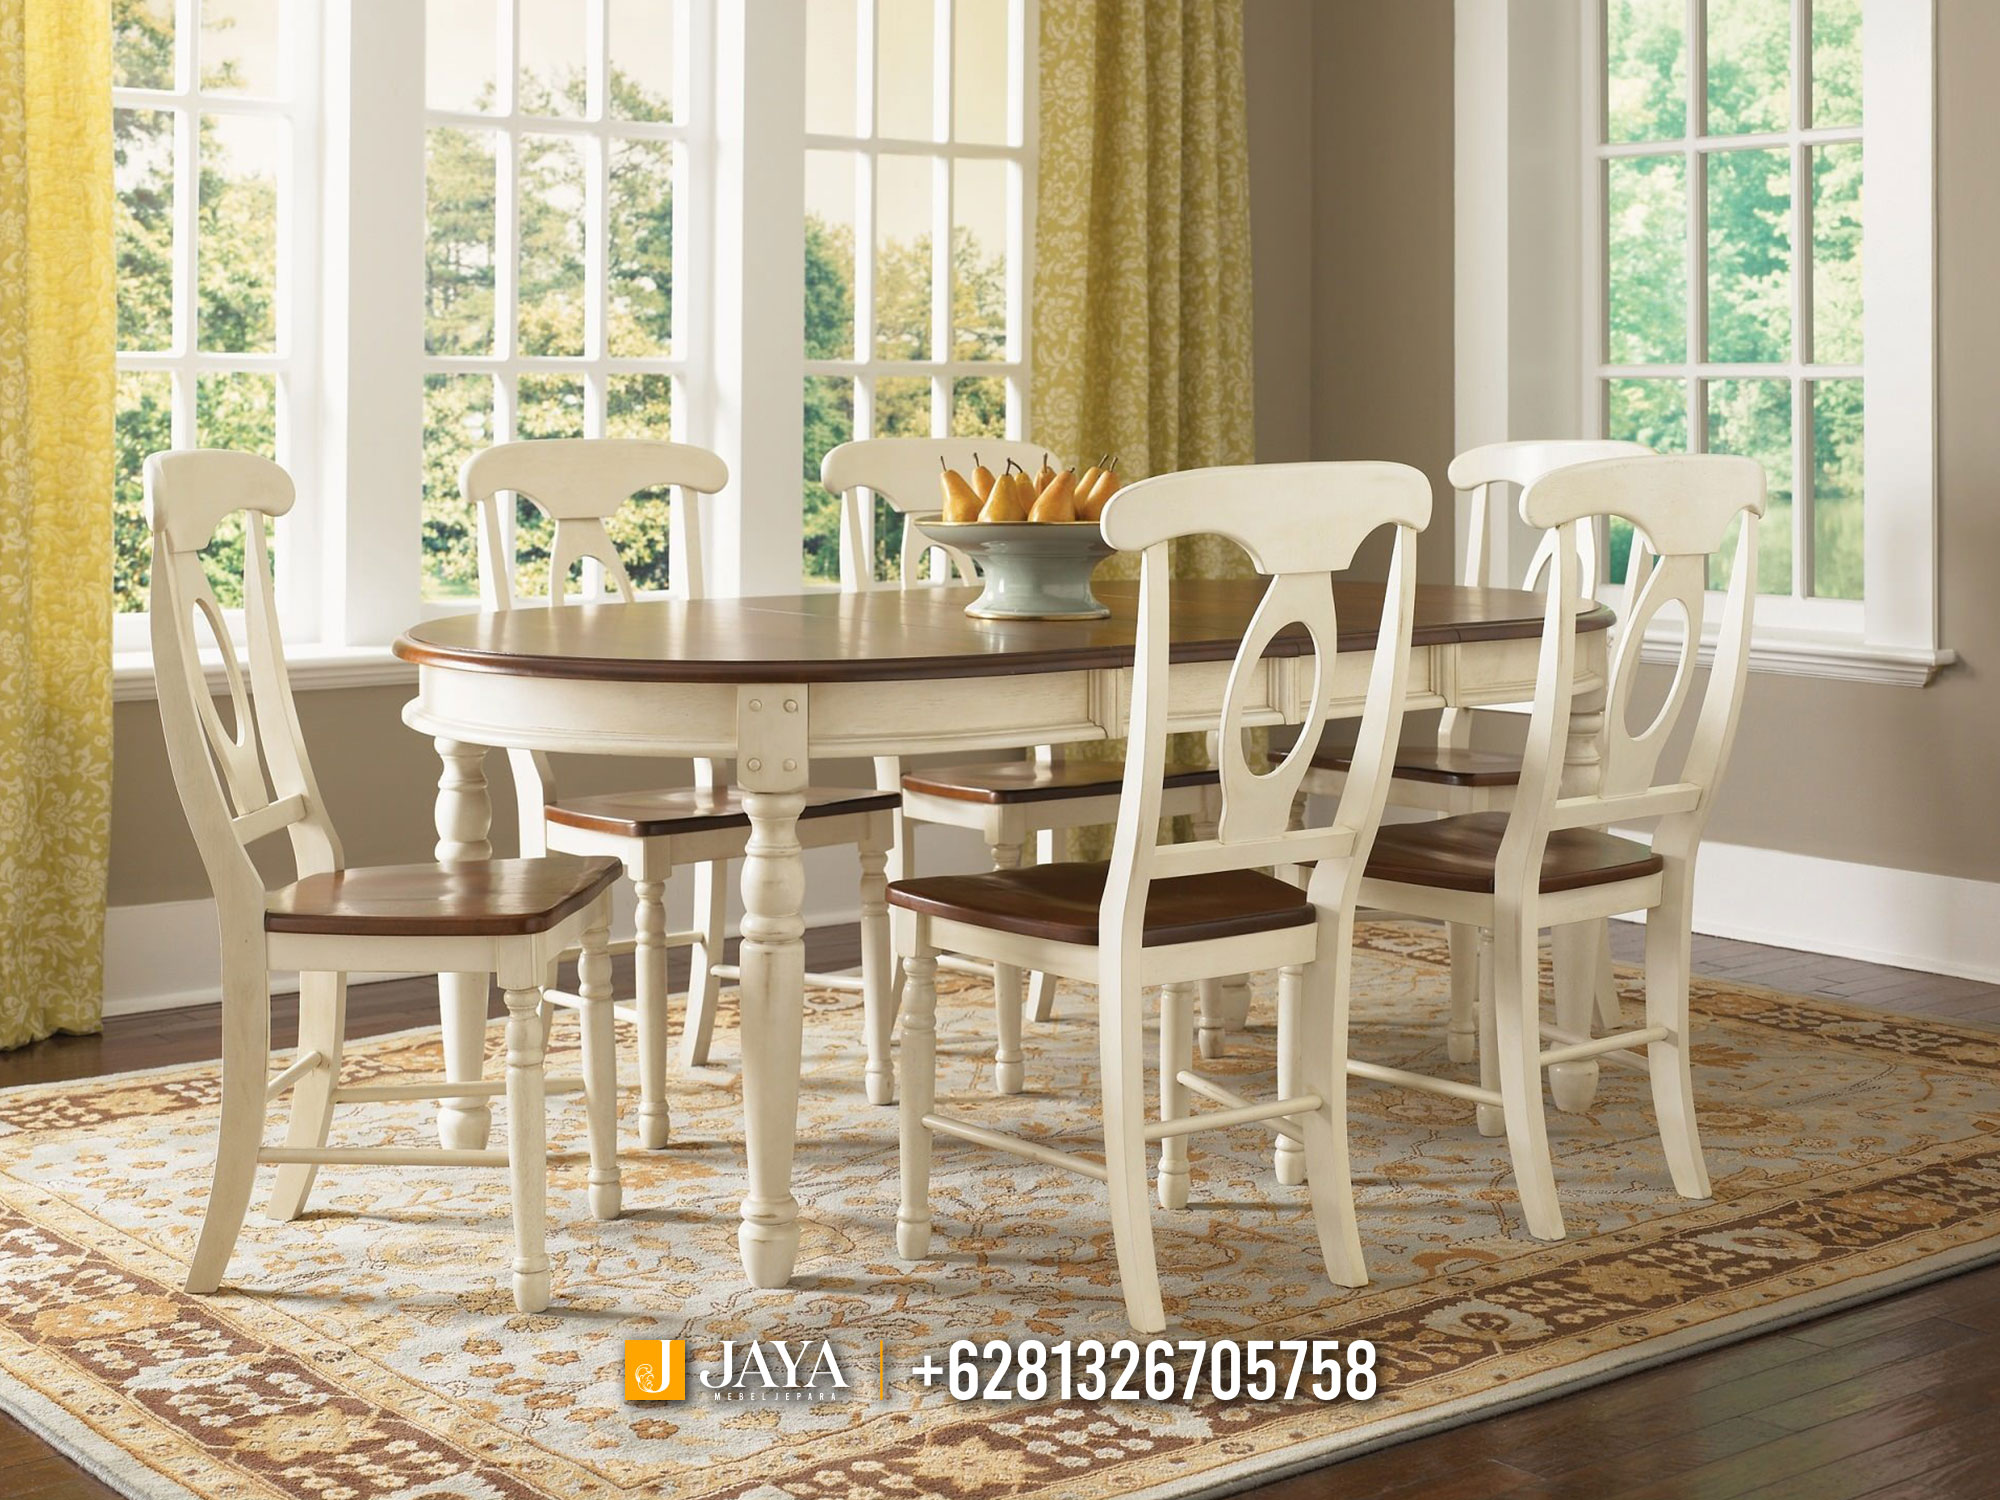 Meja Makan Minimalis Simple Elegan Modern Furniture JM475